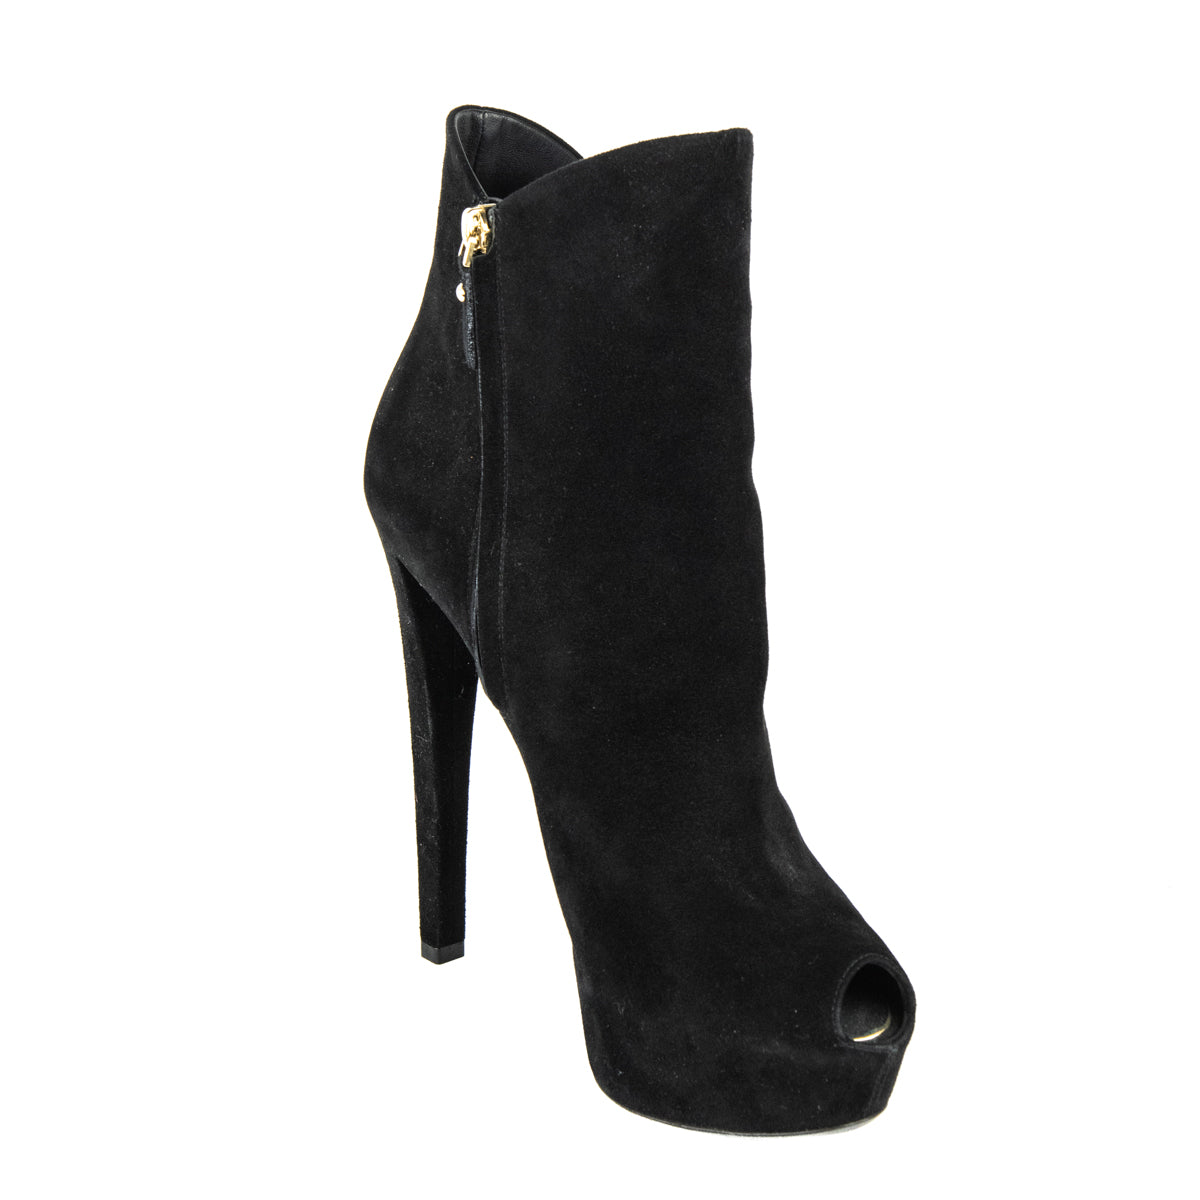 Size 11 boots Louis Vuitton shoes heels designer